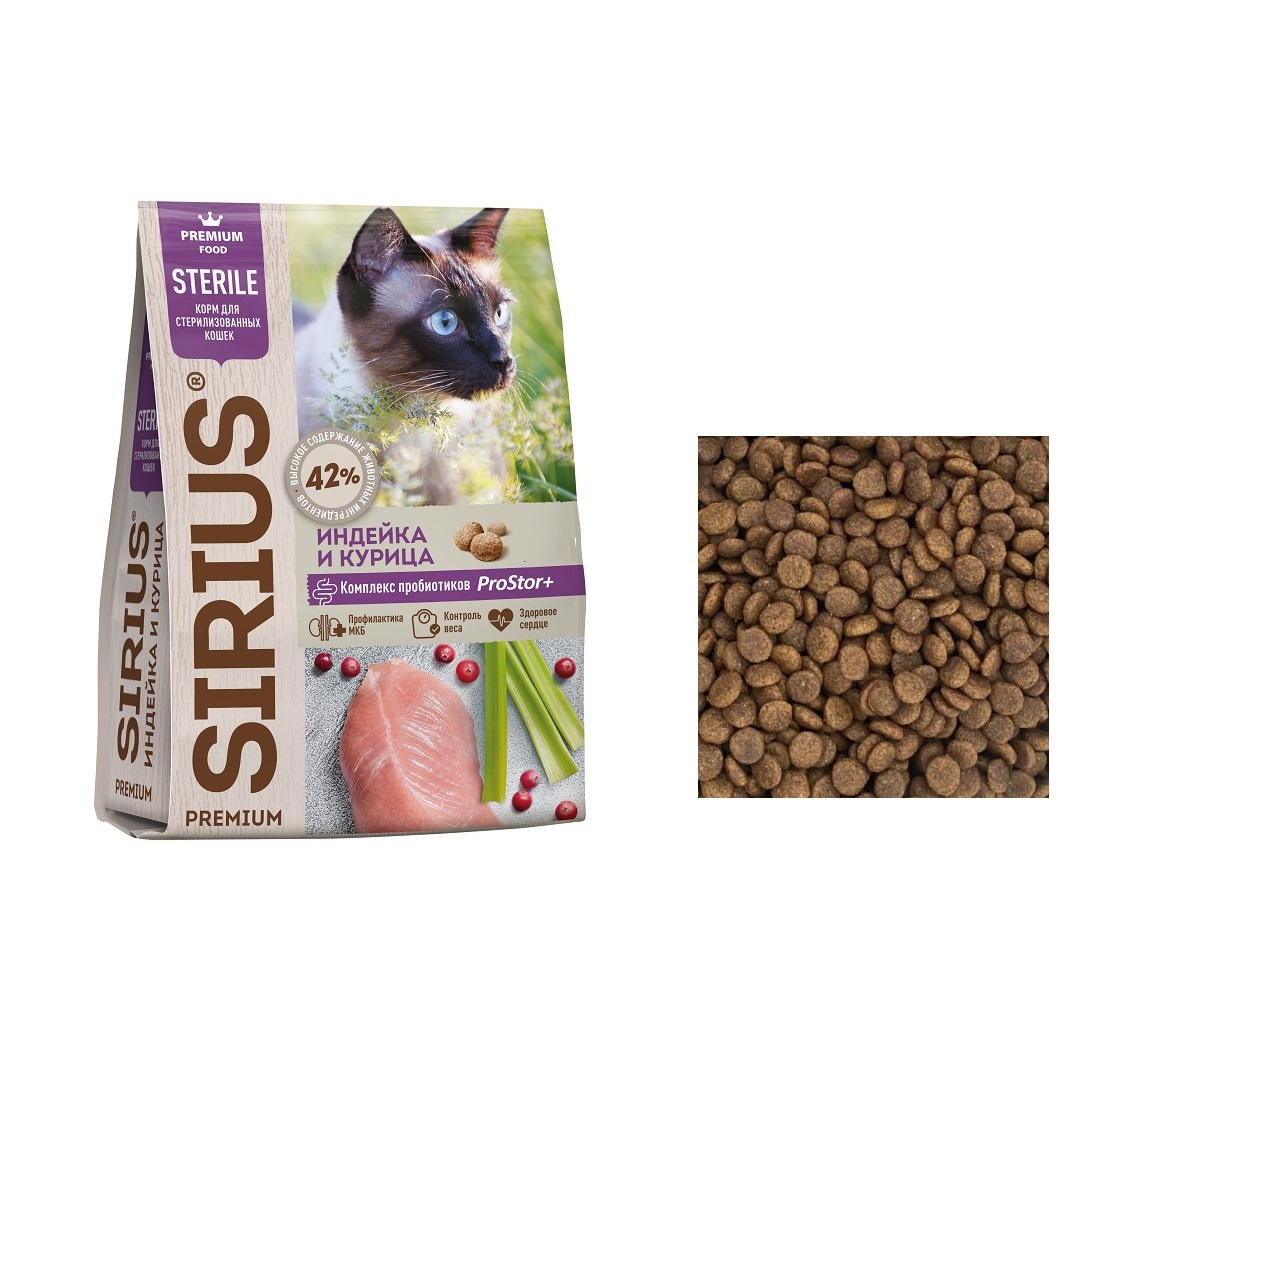 Сириус для кошек Стерилизованных Индейка/Курица, весовой 1кг (Sirius)